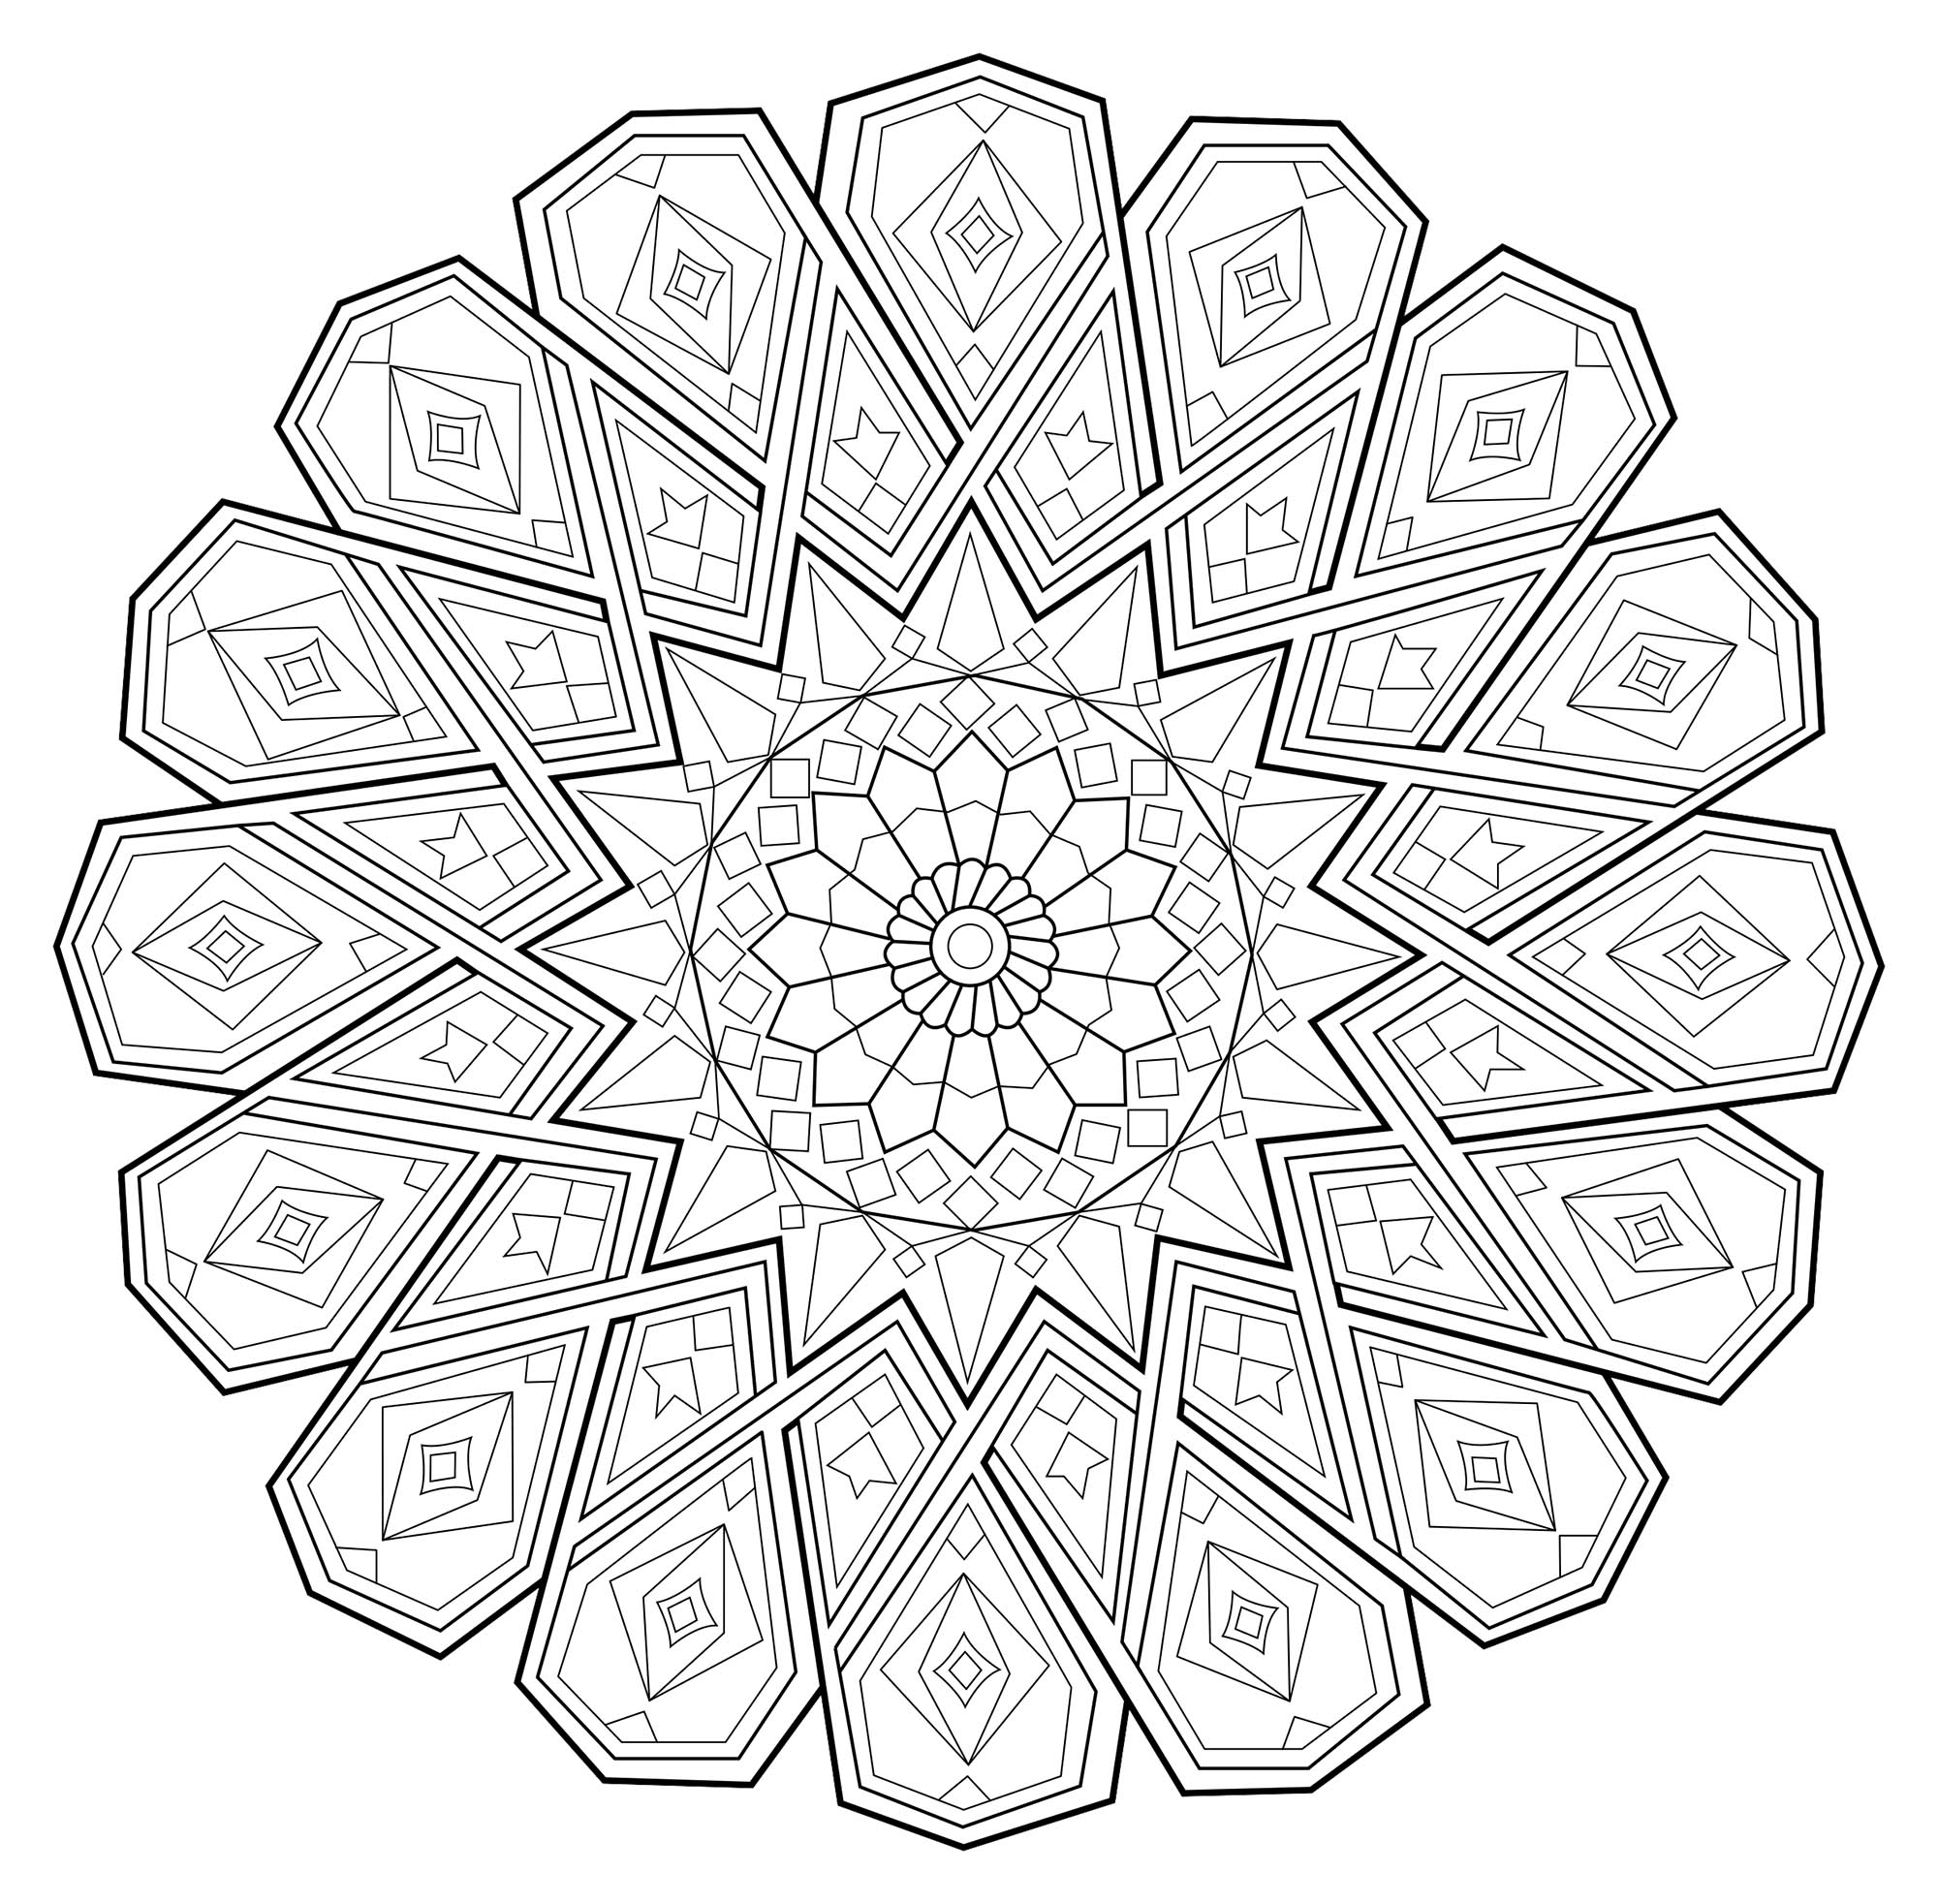 Deixe-se guiar pelos seus instintos para colorir esta incrível Mandala! O seu estilo caraterístico parece inspirado nos motivos incas ou astecas. Exprima a sua alma e a sua paixão, e o resultado será igual a si.